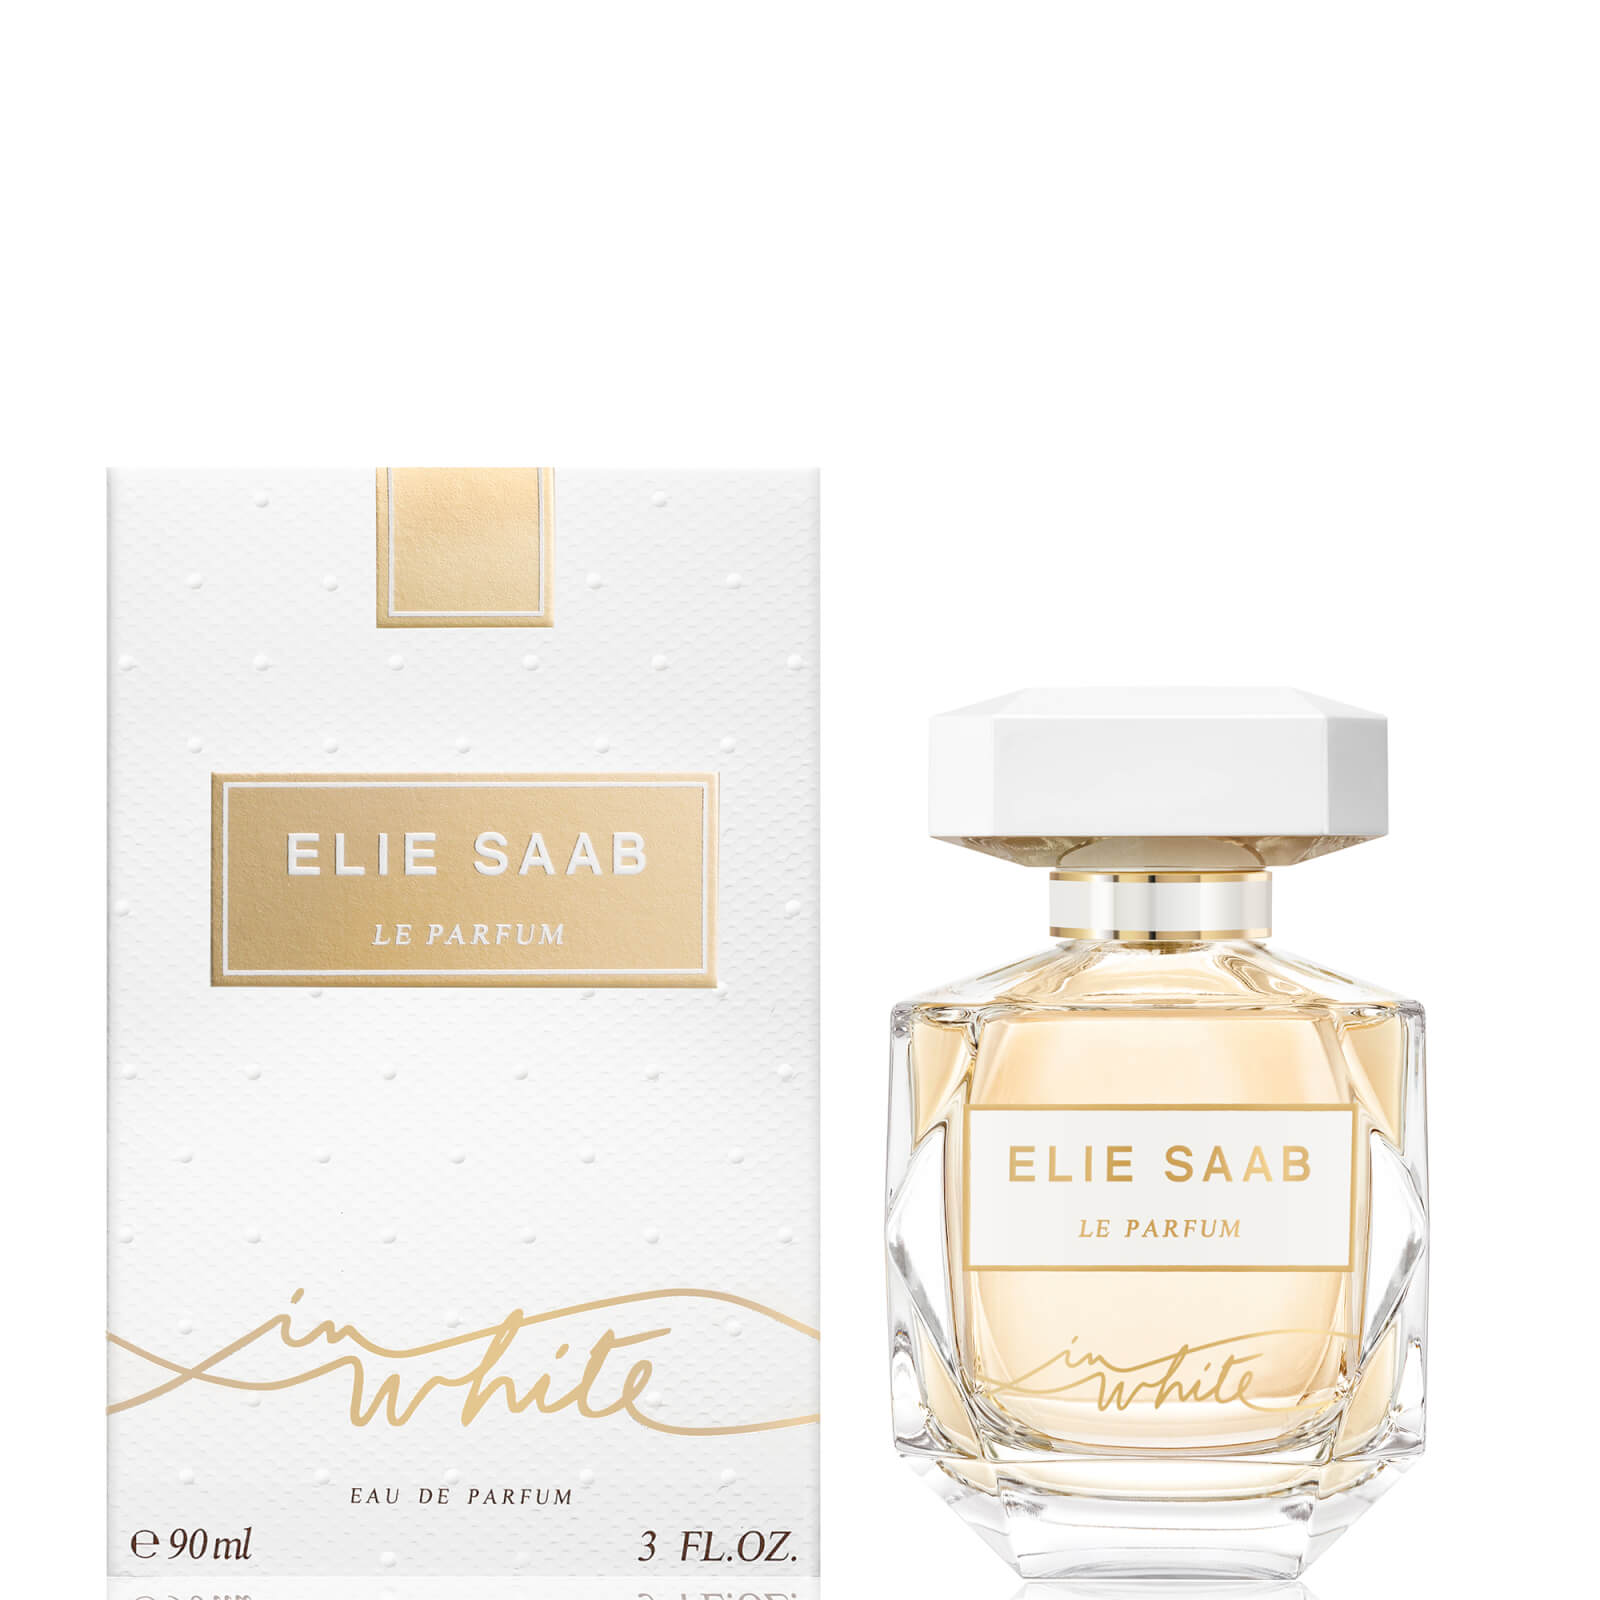 Photos - Women's Fragrance Elie Saab Le Parfum in White Eau de Parfum - 90ml EL4142500 